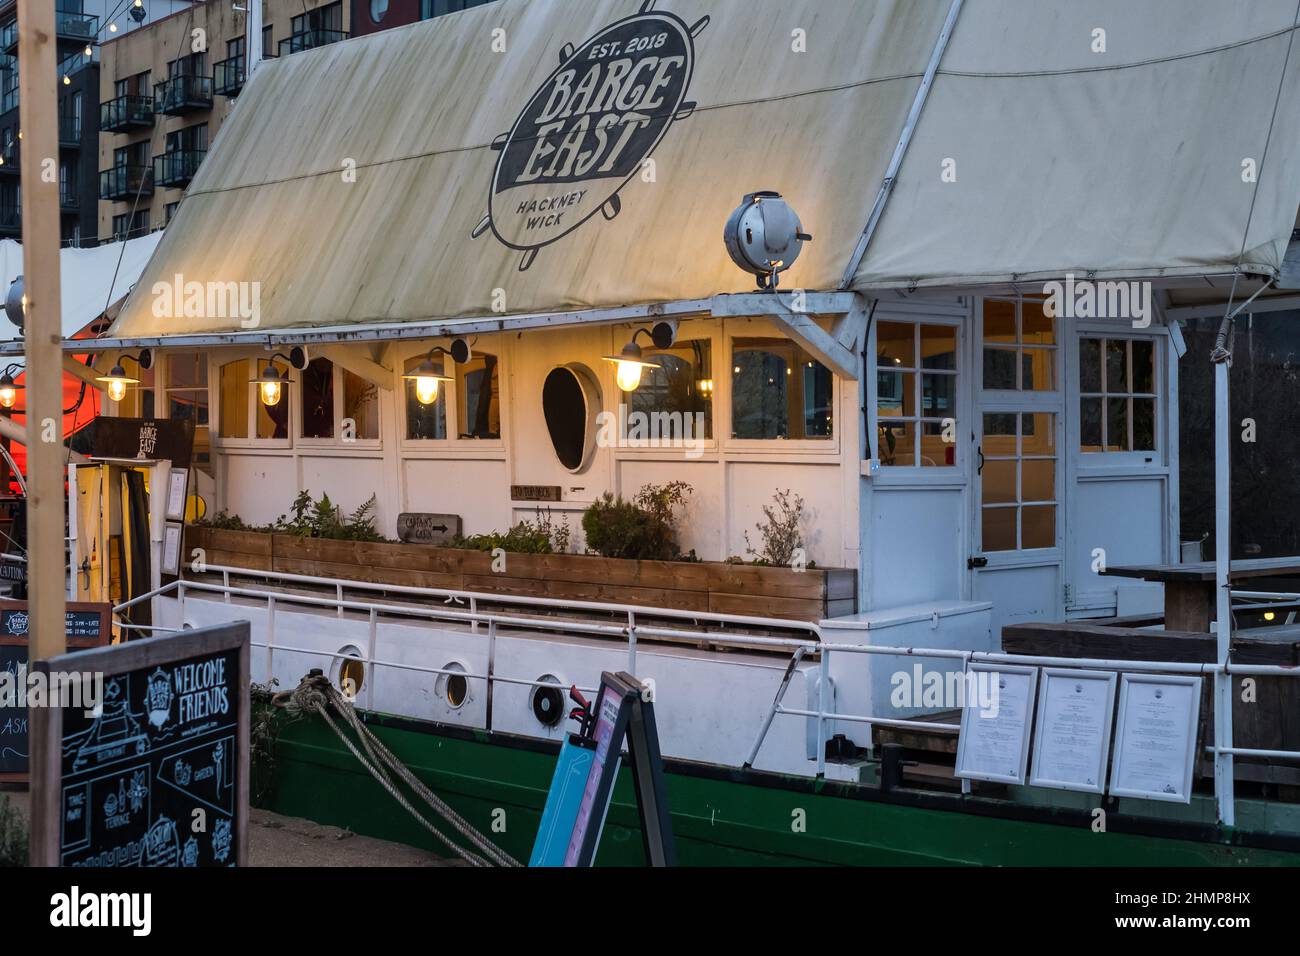 Barge East, ein Restaurant und eine Bar auf einer holländischen Barge, die in Hackney Wick, East London, festgemacht ist Stockfoto